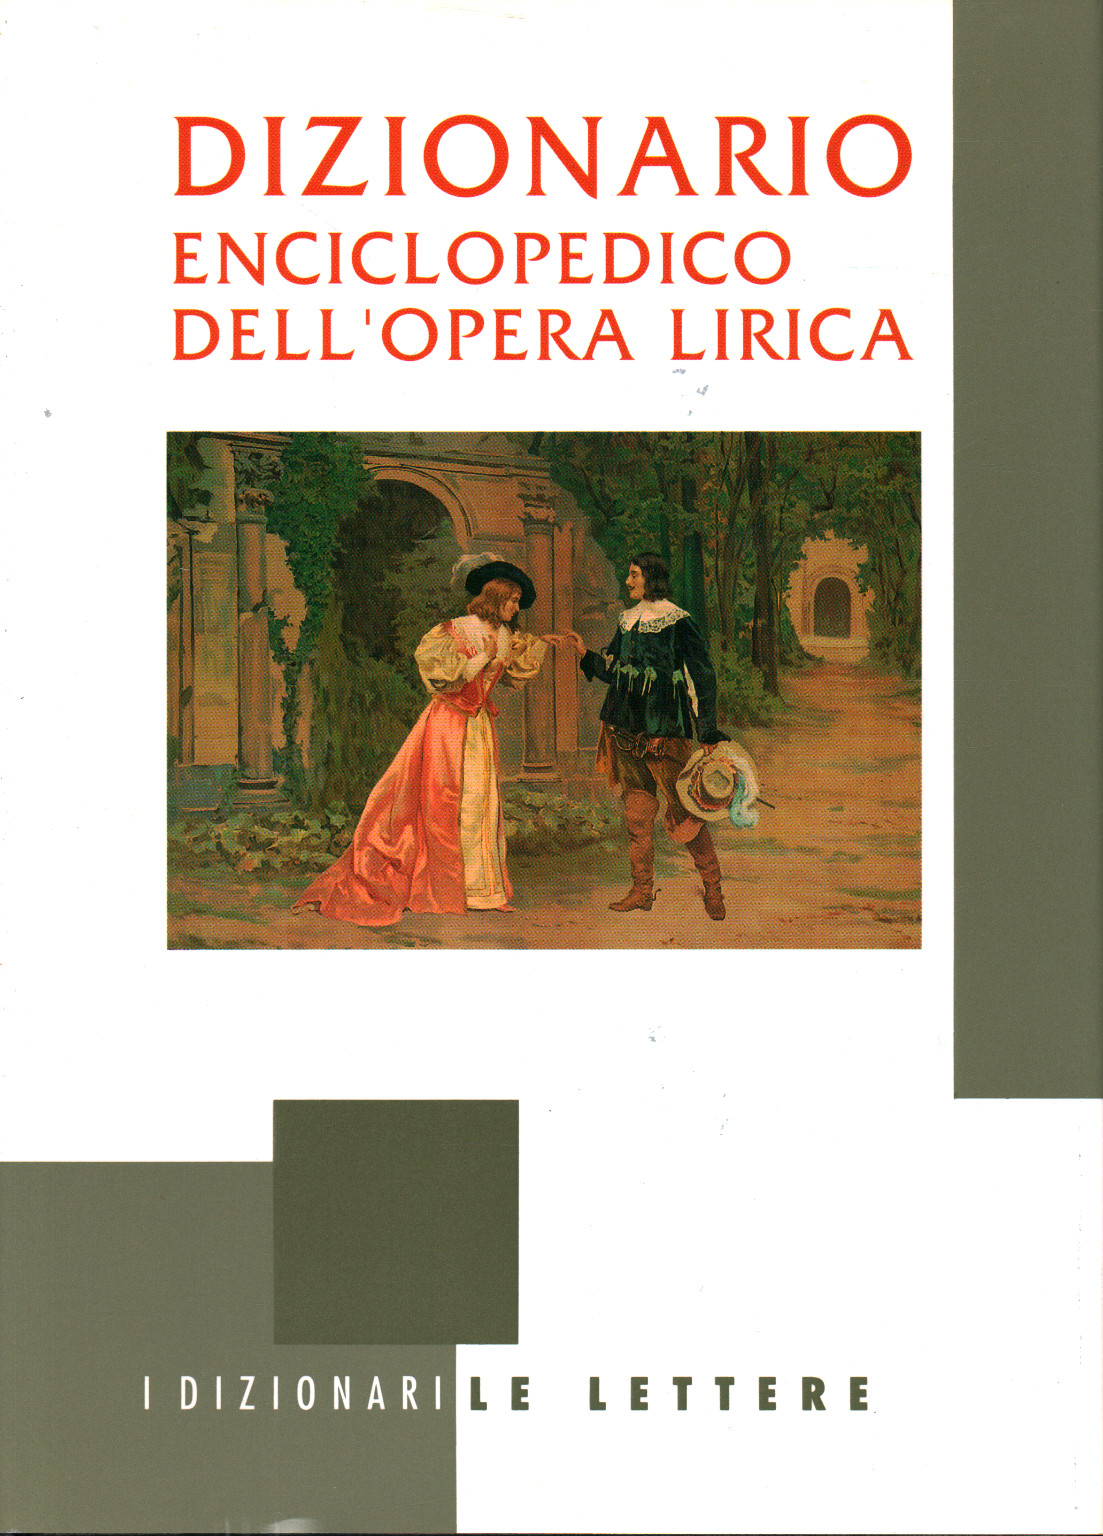 El diccionario enciclopédico de dell opera, s.una.